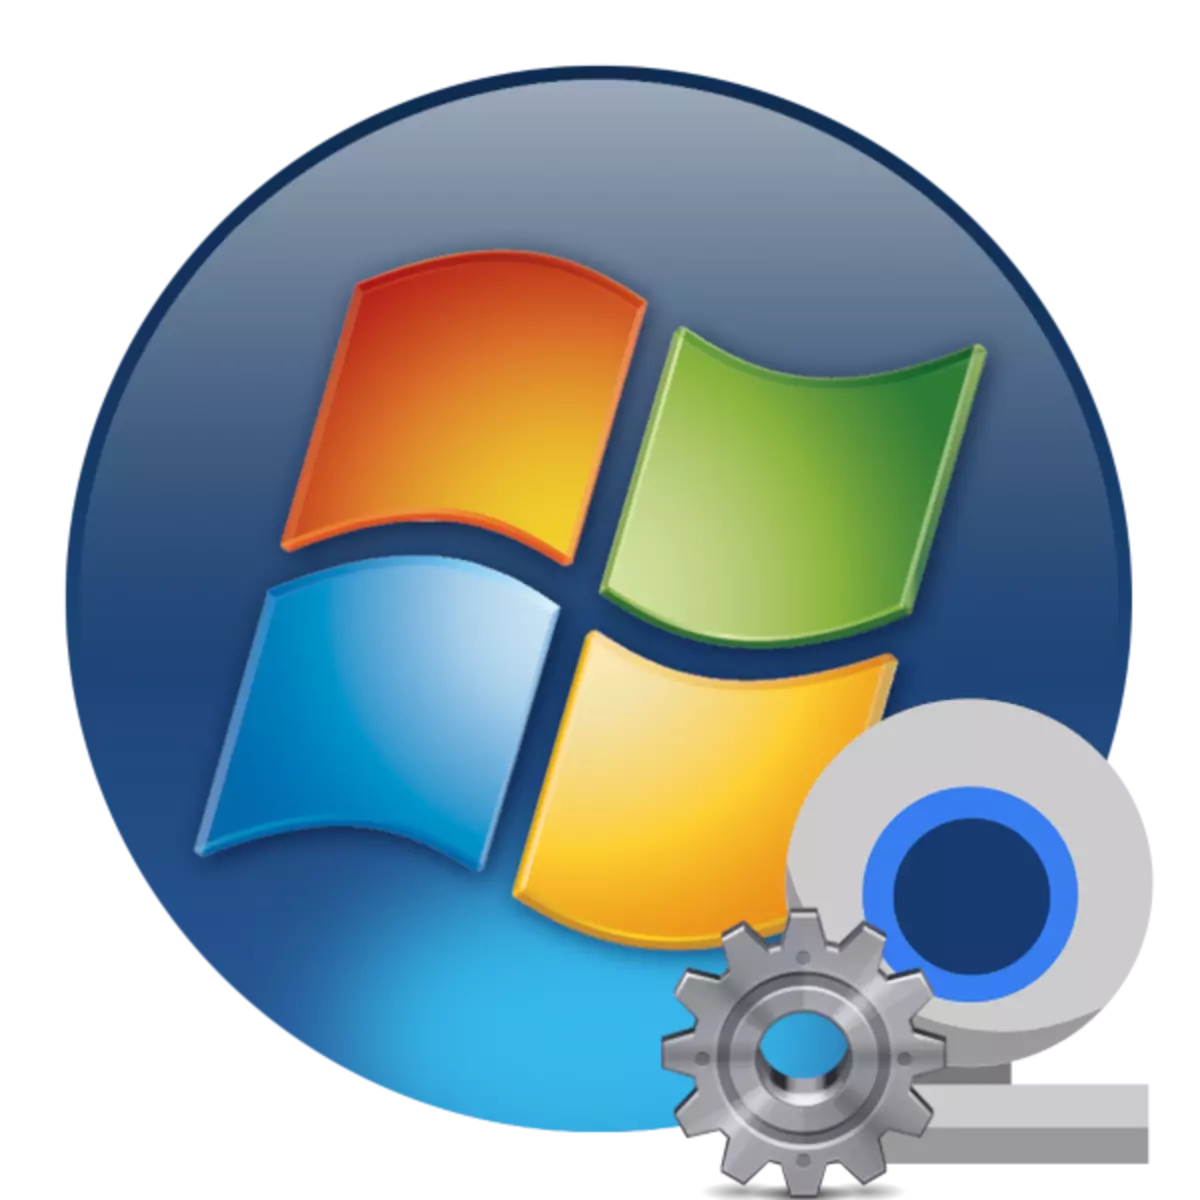 Како да конфигурирате веб камера на лаптоп Windows 7